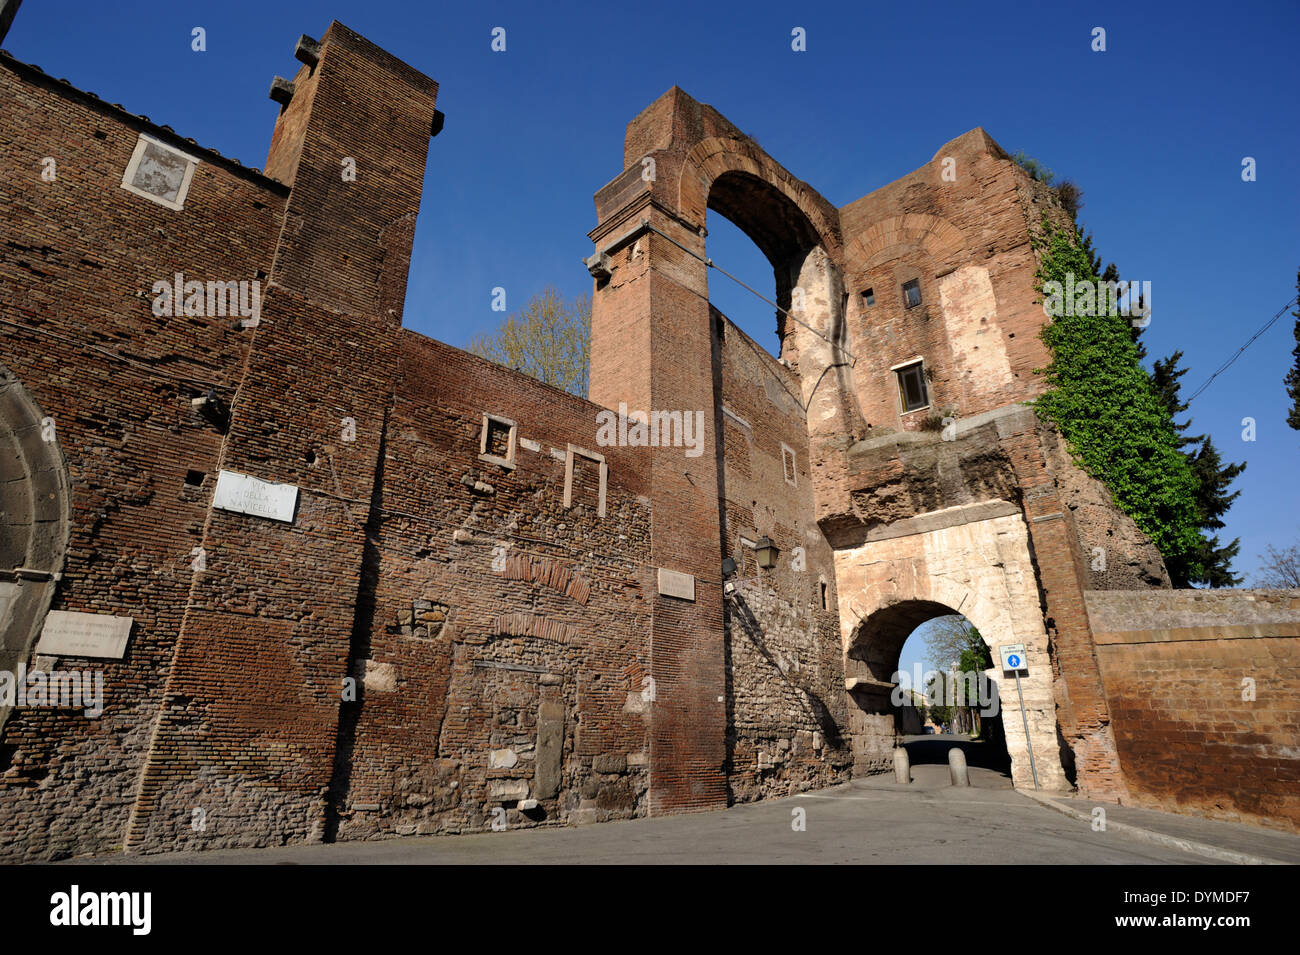 Italie, Rome, Celio, anciennes fortifications des remparts de Servian, arche de Dolabella porte romaine et ruines de l'aqueduc de Néron Banque D'Images